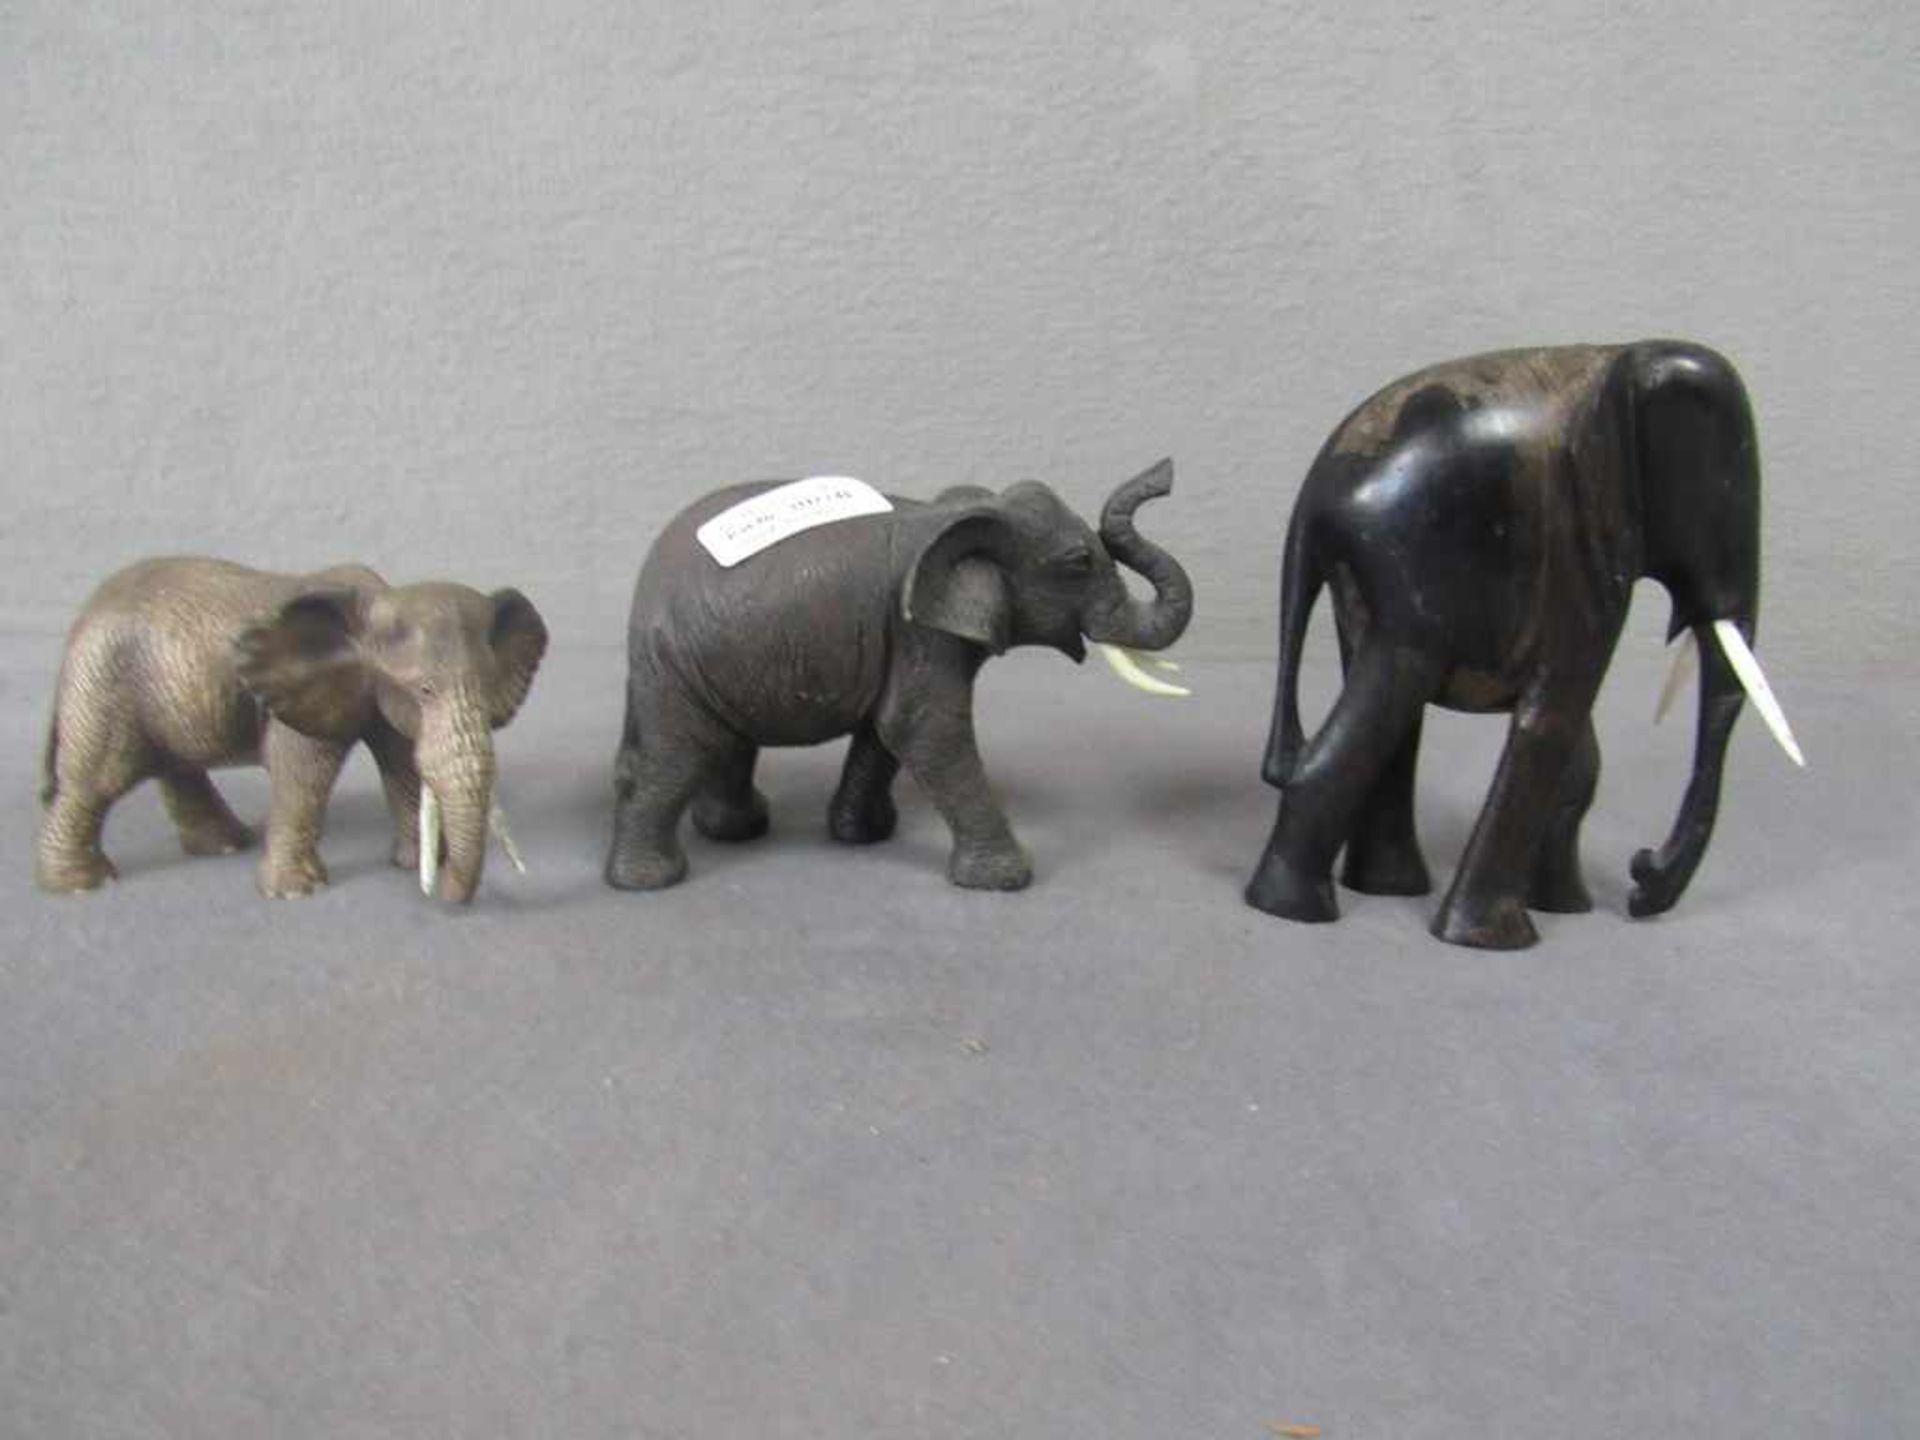 Konvolut drei Elefantenskulpturen 9-16cm- - -20.00 % buyer's premium on the hammer price19.00 %